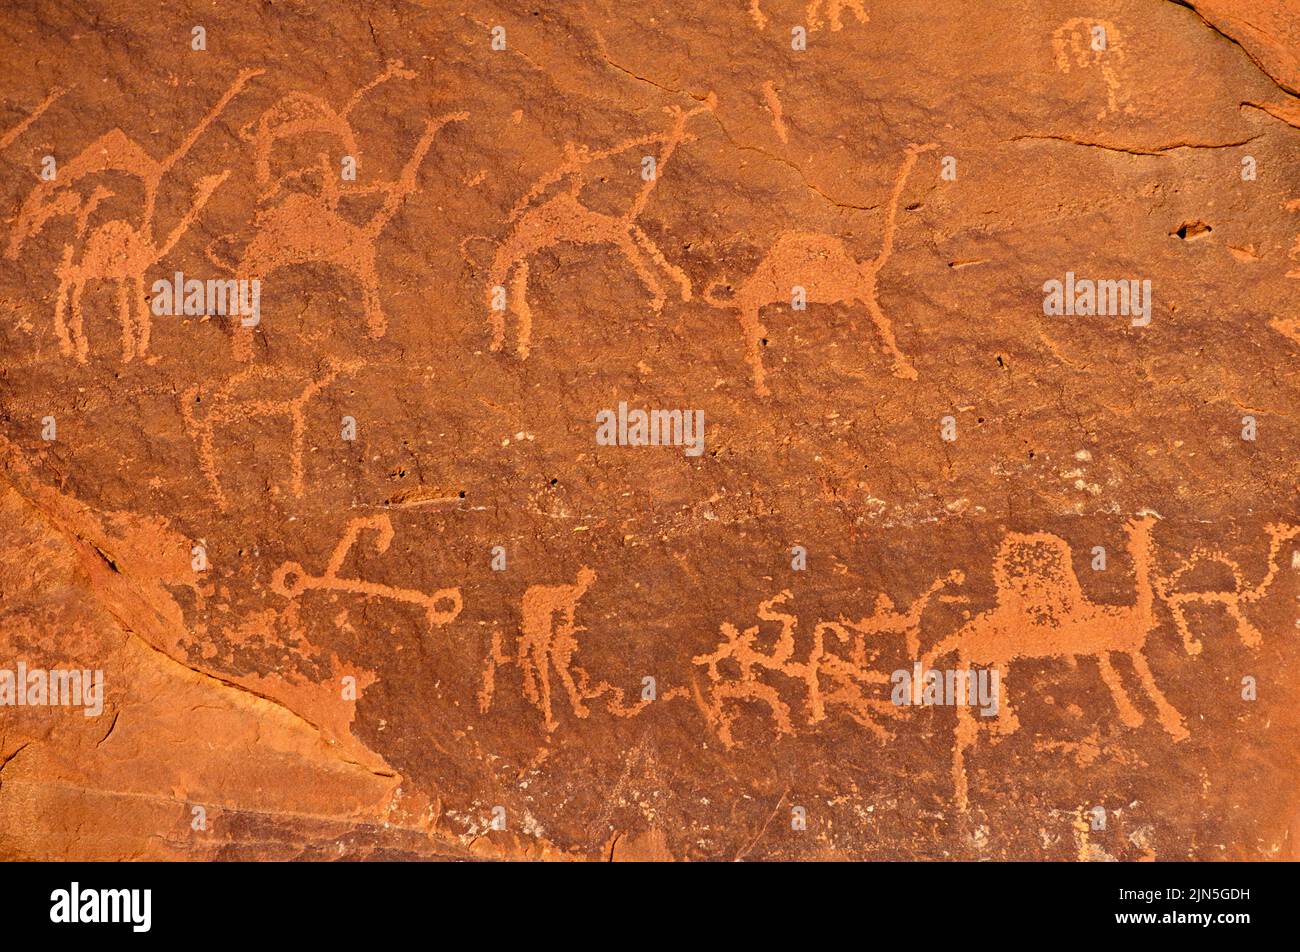 Jordania, desierto de Wadi Rum, petroglifos Foto de stock